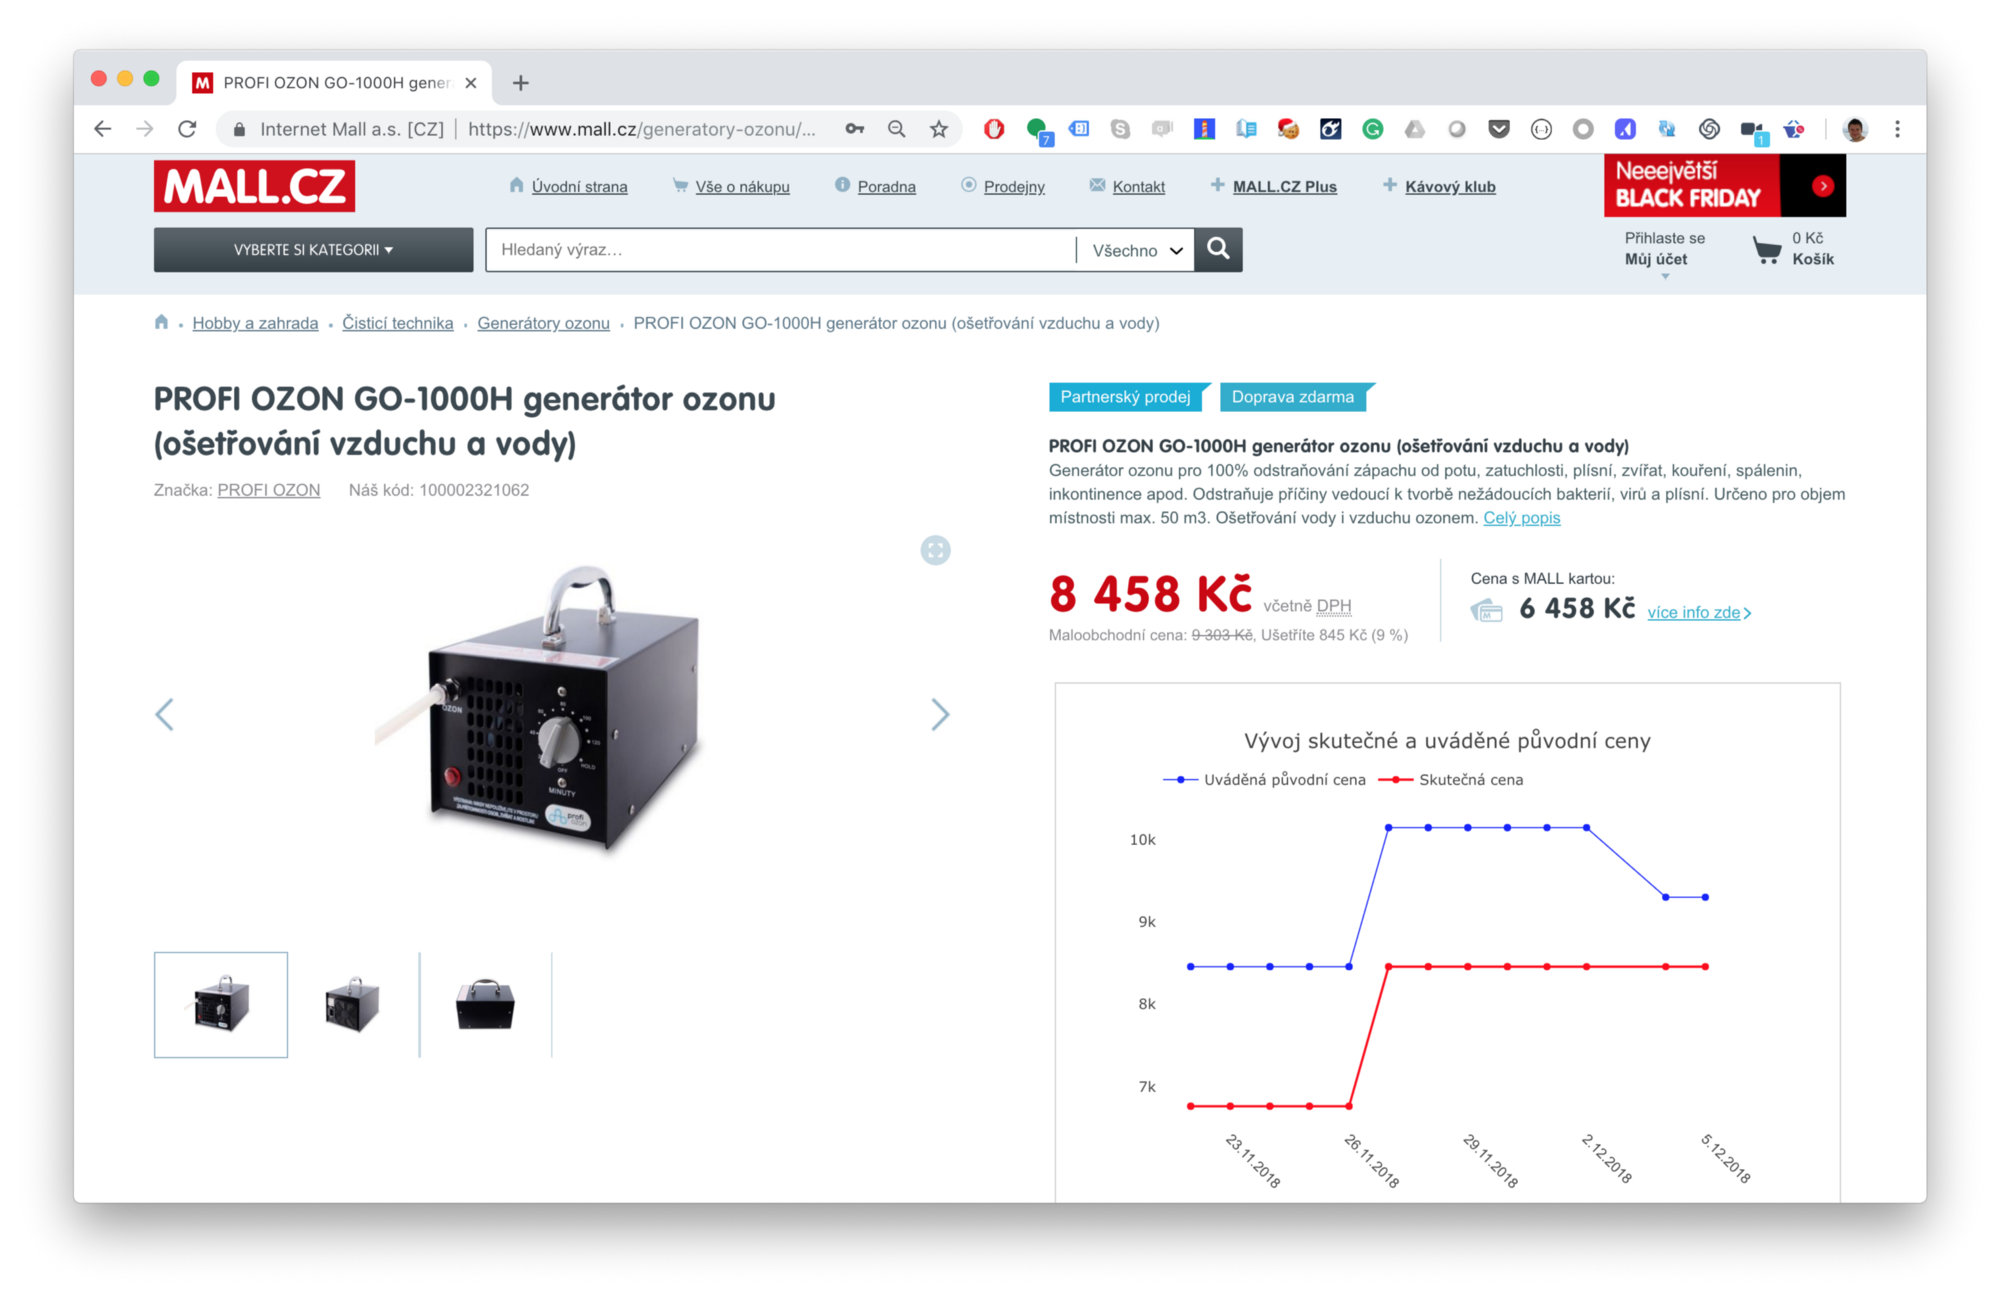 snímek obrazovky generátoru ozonu, který se prodáva za cenu 8458 Kč na webu mall.cz